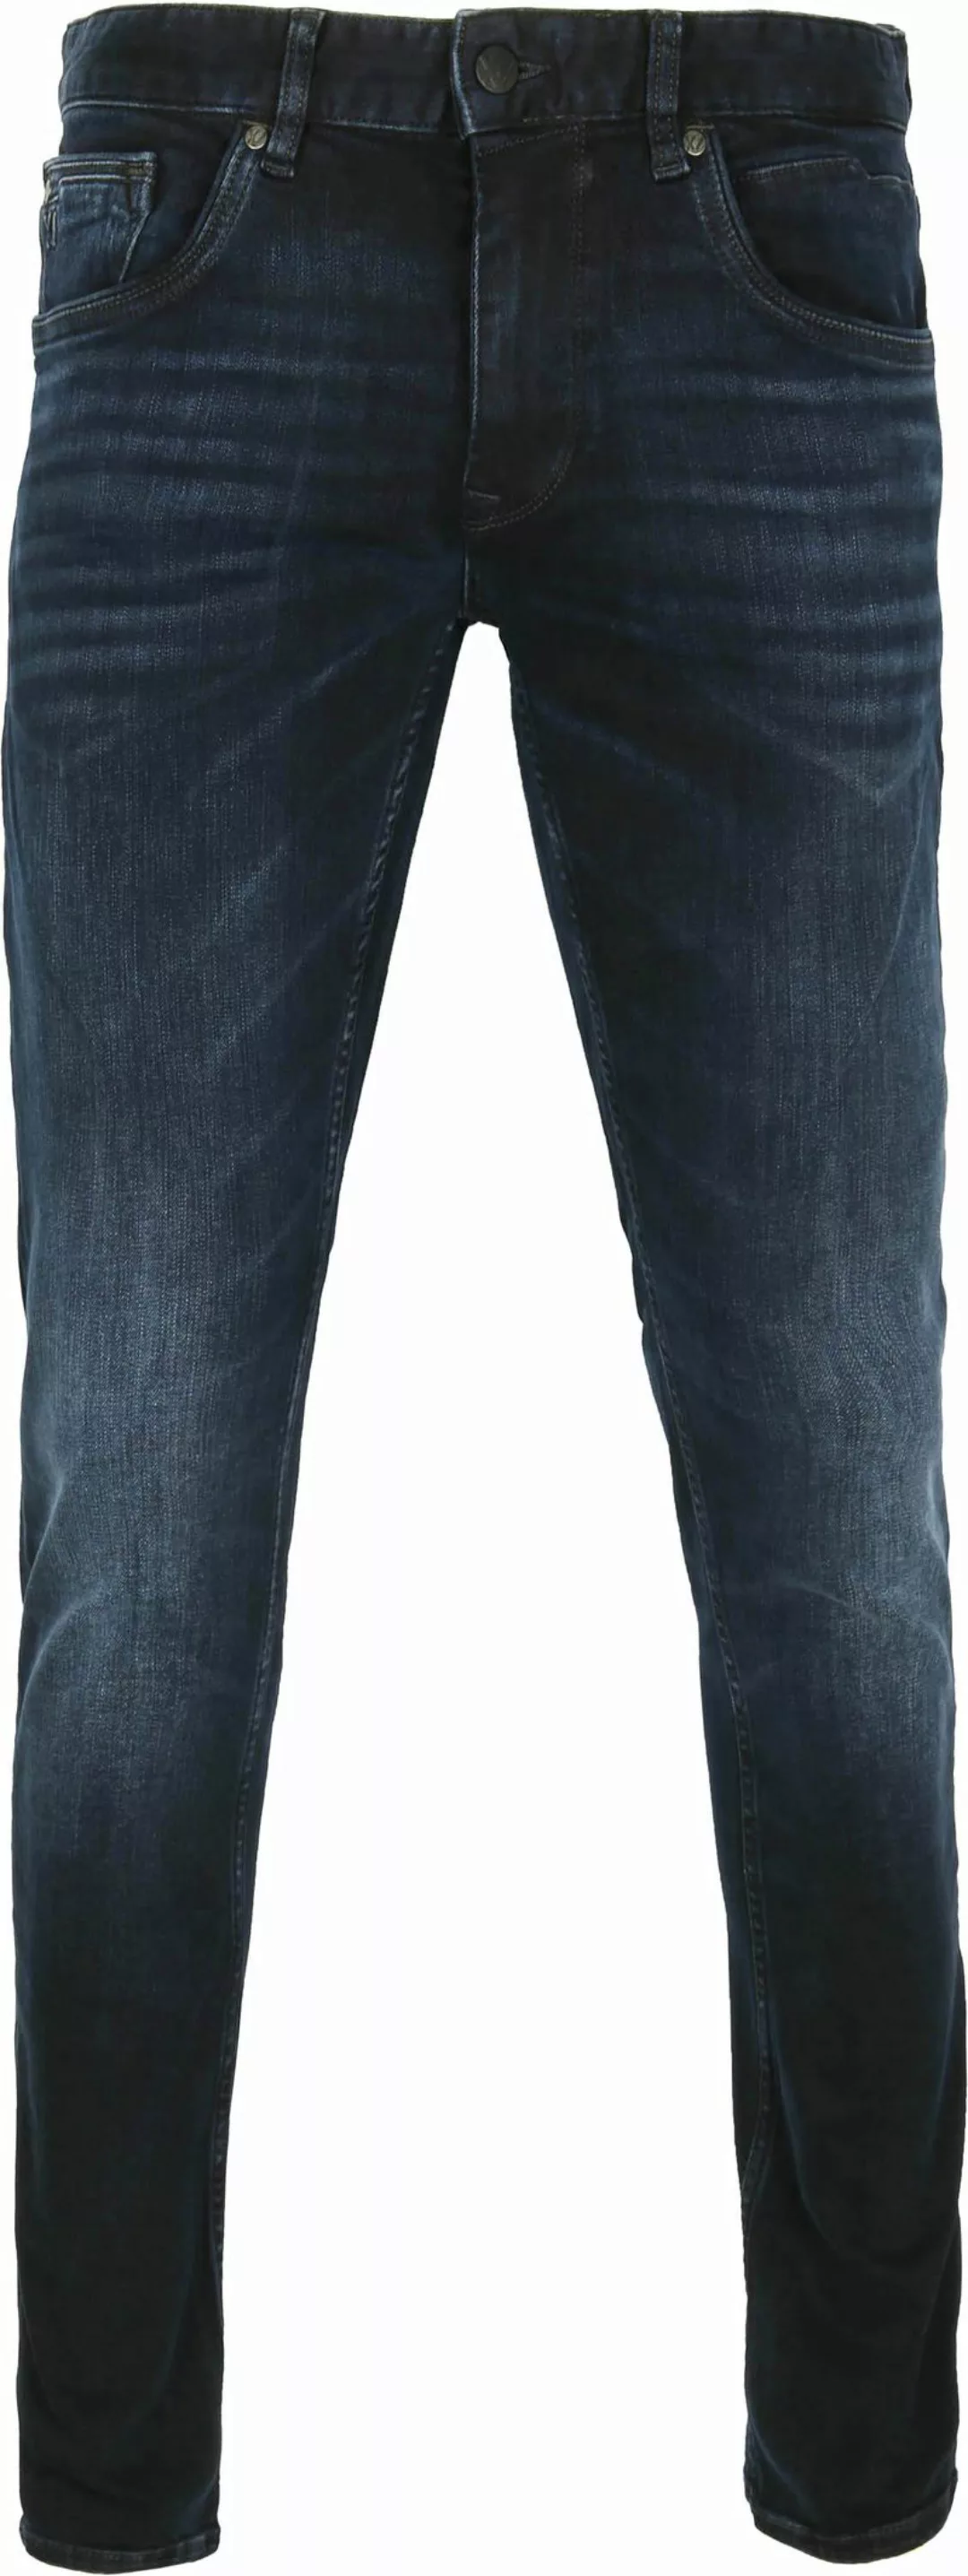 PME Legend XV Jeans Blue Black PTR150 - Größe W 32 - L 30 günstig online kaufen